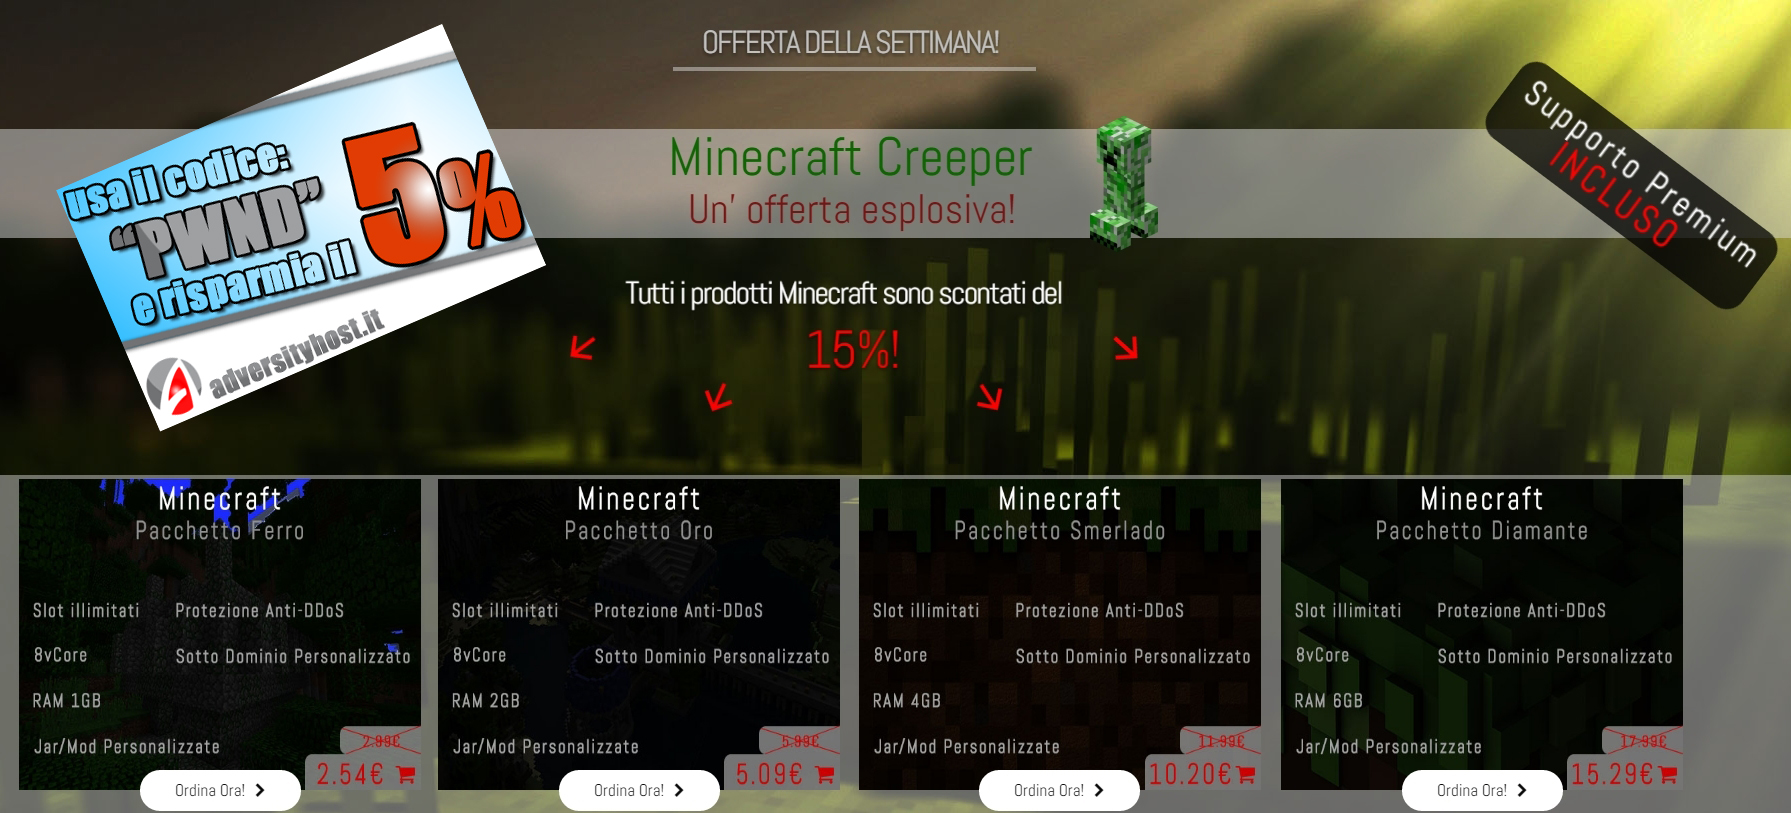 Minecraft: tutti i prodotti scontati del 15% su Adversity!